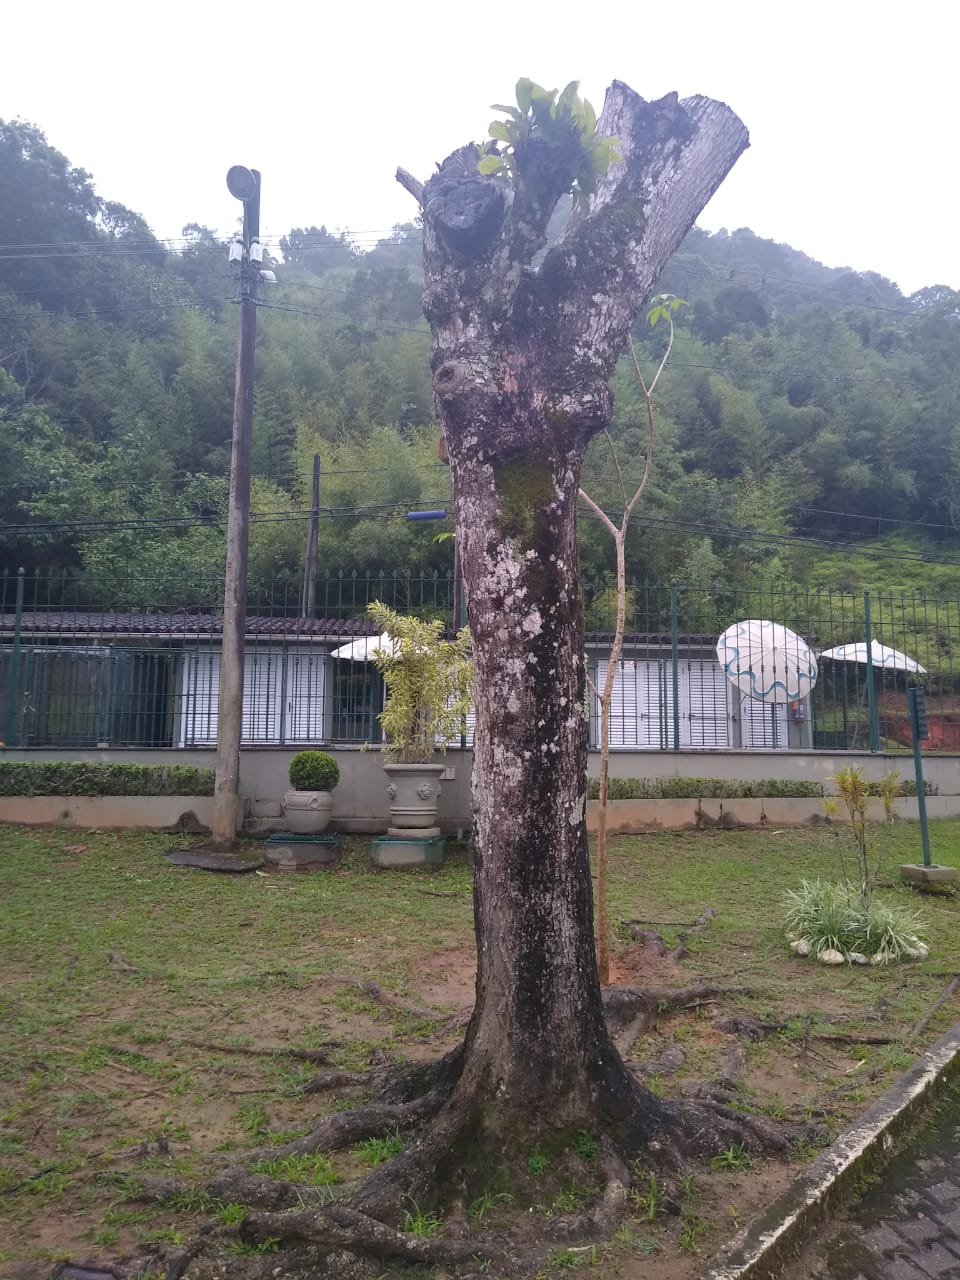 Polícia constata corte de árvores sem autorização em condomínio de Angra dos Reis